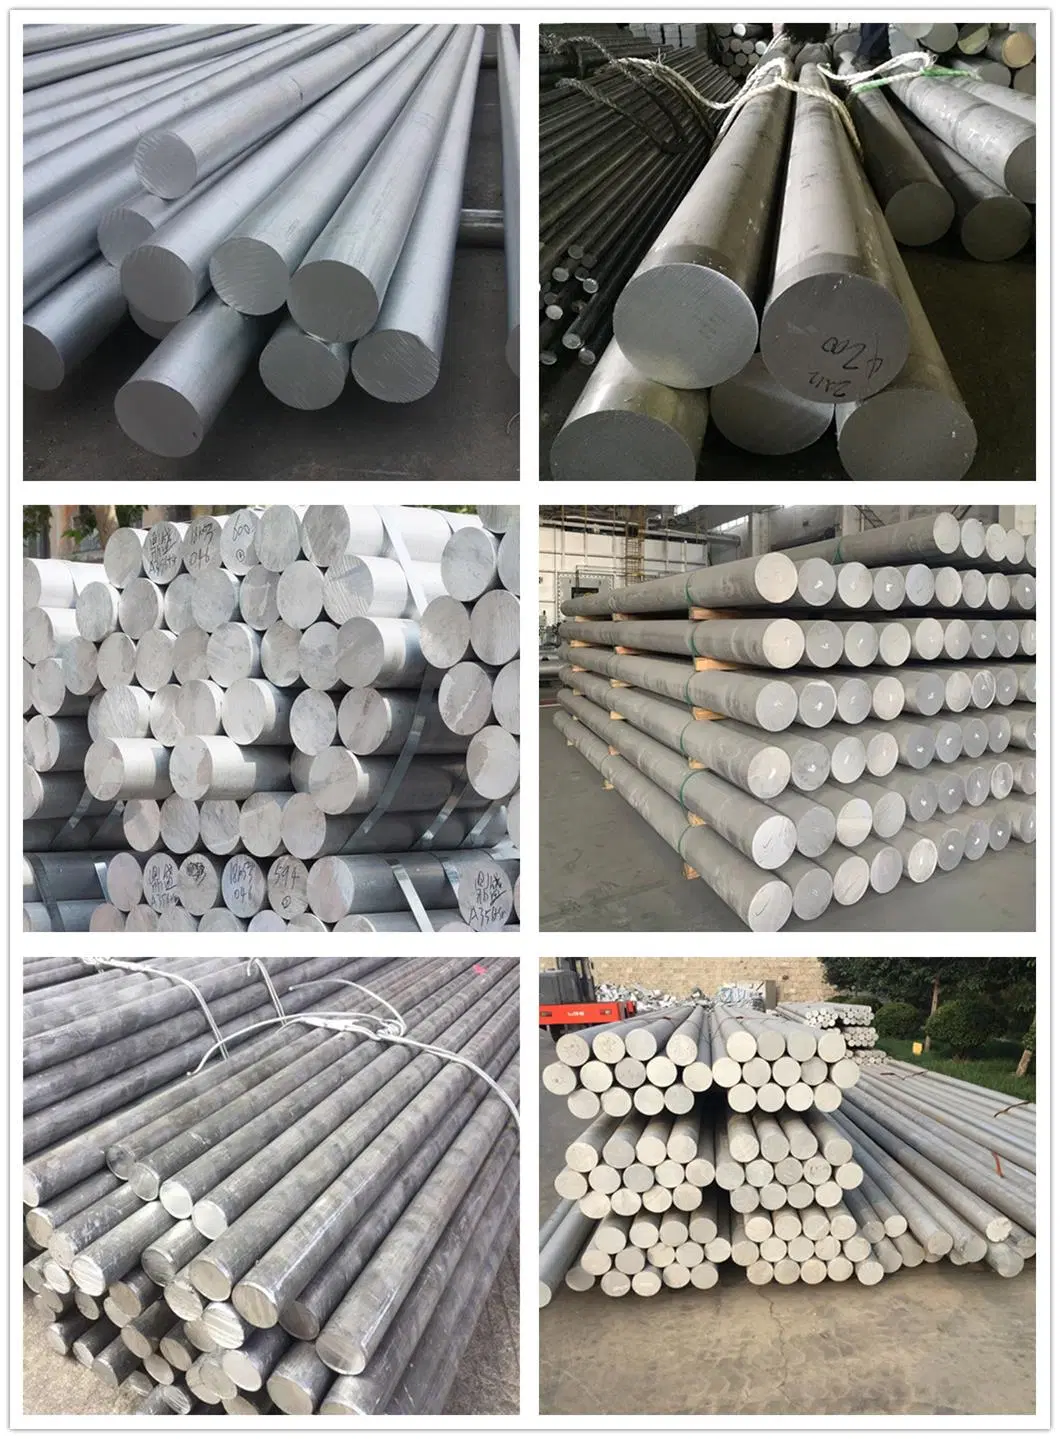 China Aluminum Bar Manufacturers Free Sample 6063 6061 7075 Aluminum Bar Rod T6 Aluminum Round Bar